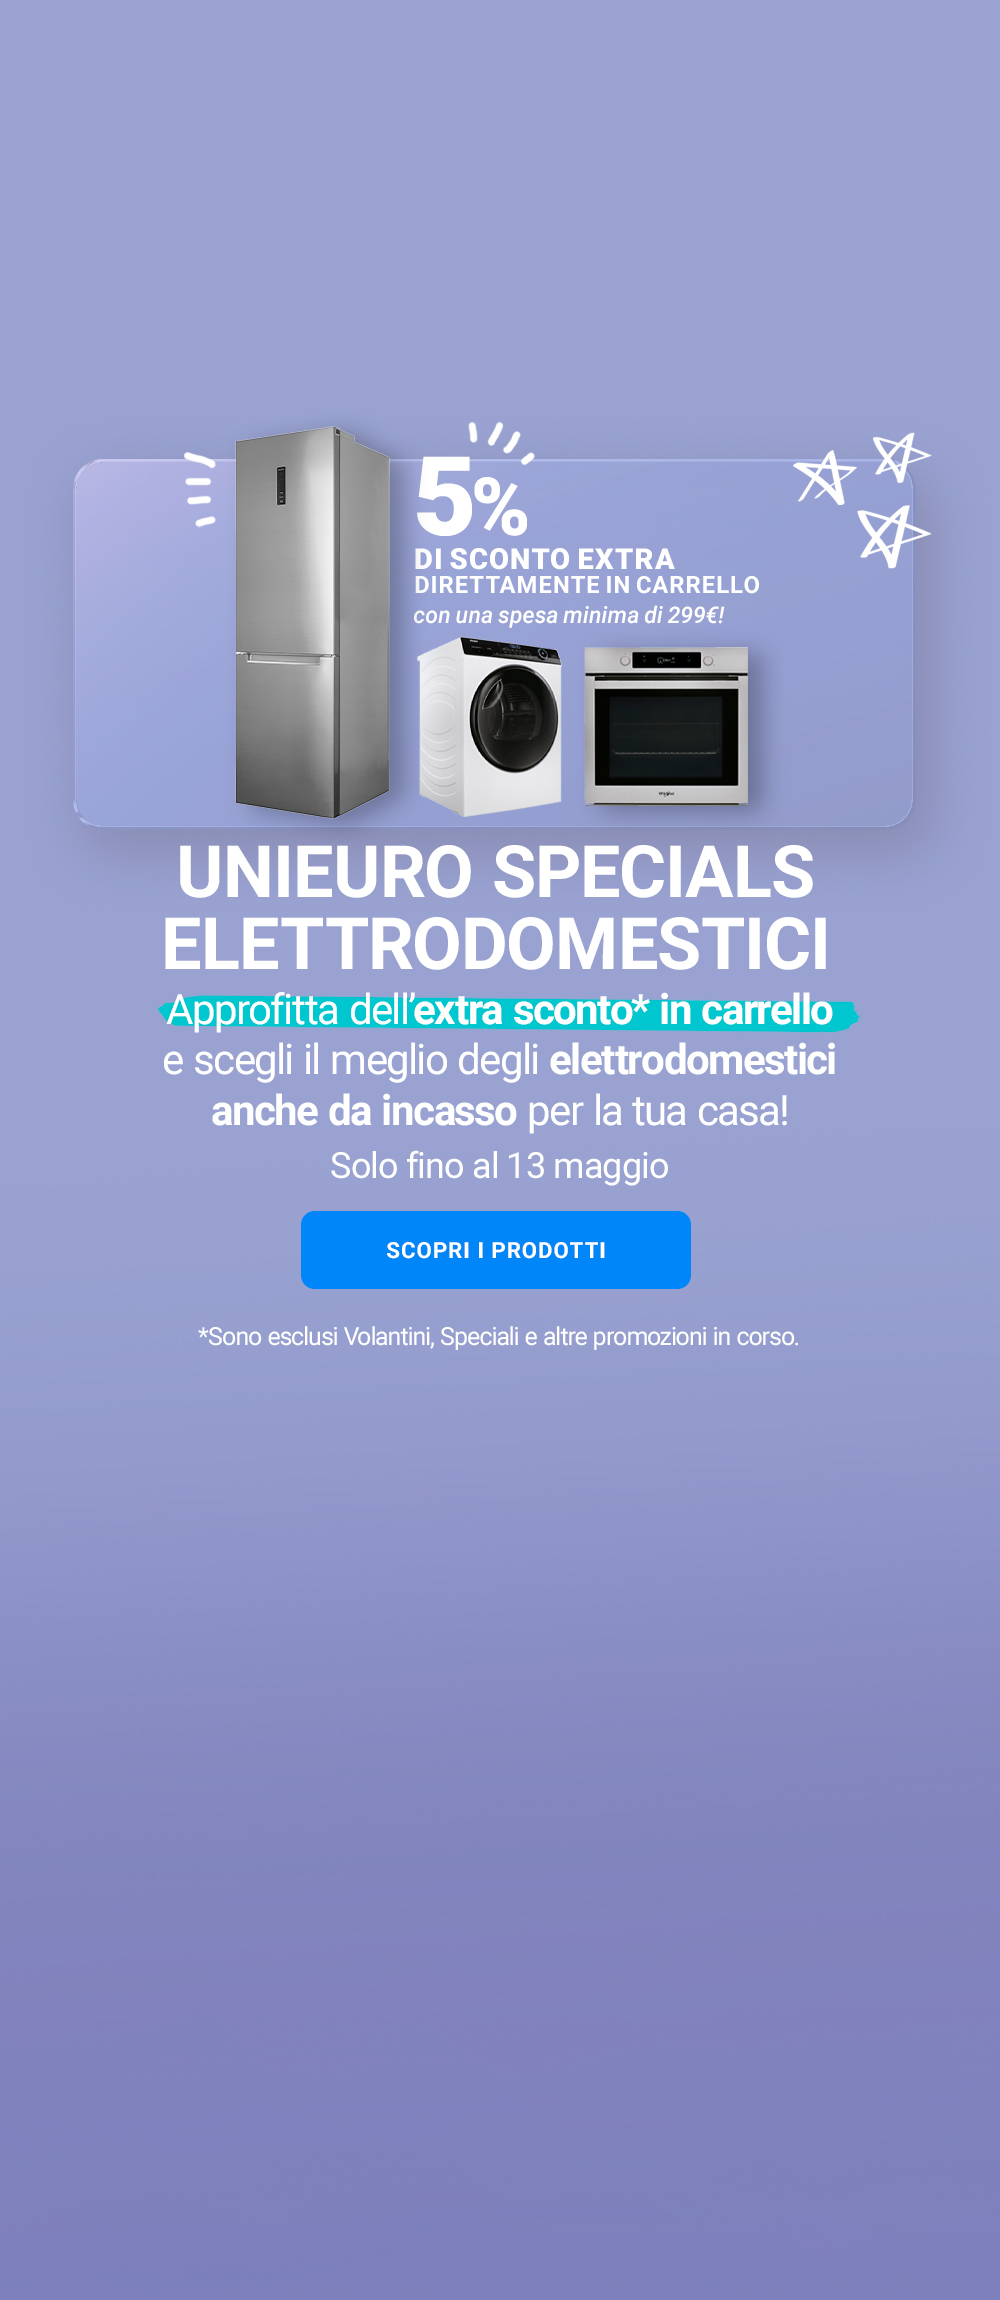 unieuro-specials-elettrodomestici-weekend-desktop 10  maggio - Copia.jpg